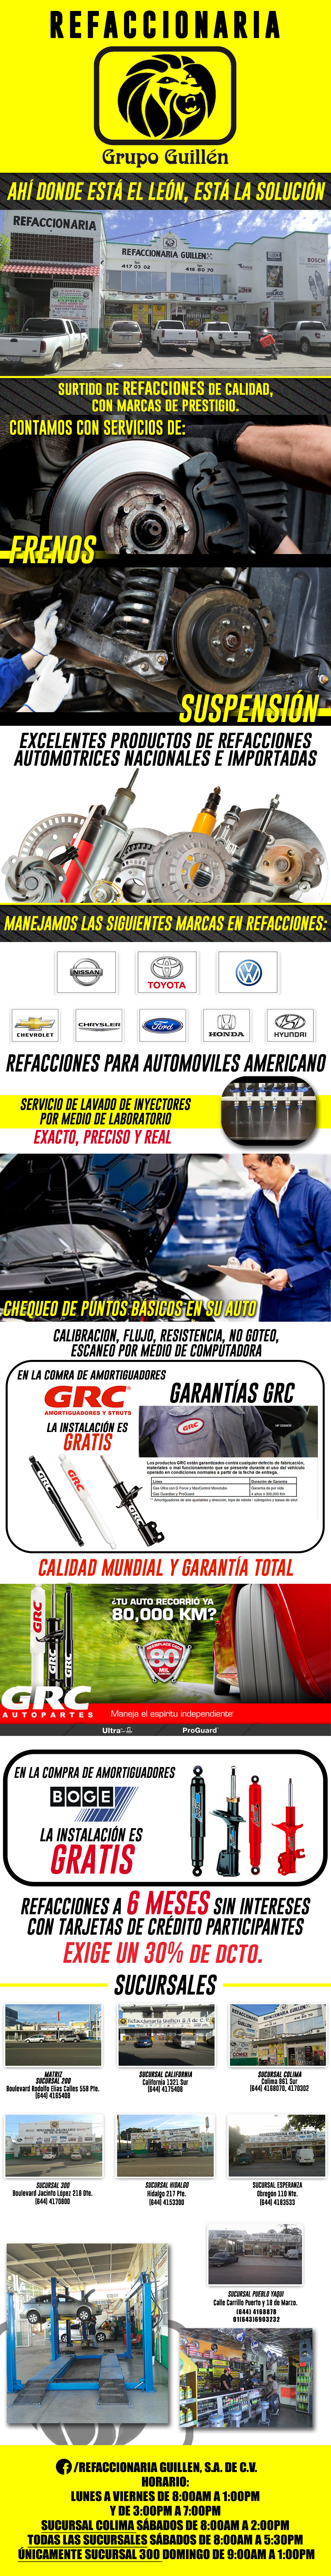 Grupo Guillén Refaccionarias-Grupo Guillén le ofrece el mejor servicio, al mejor precio.                    